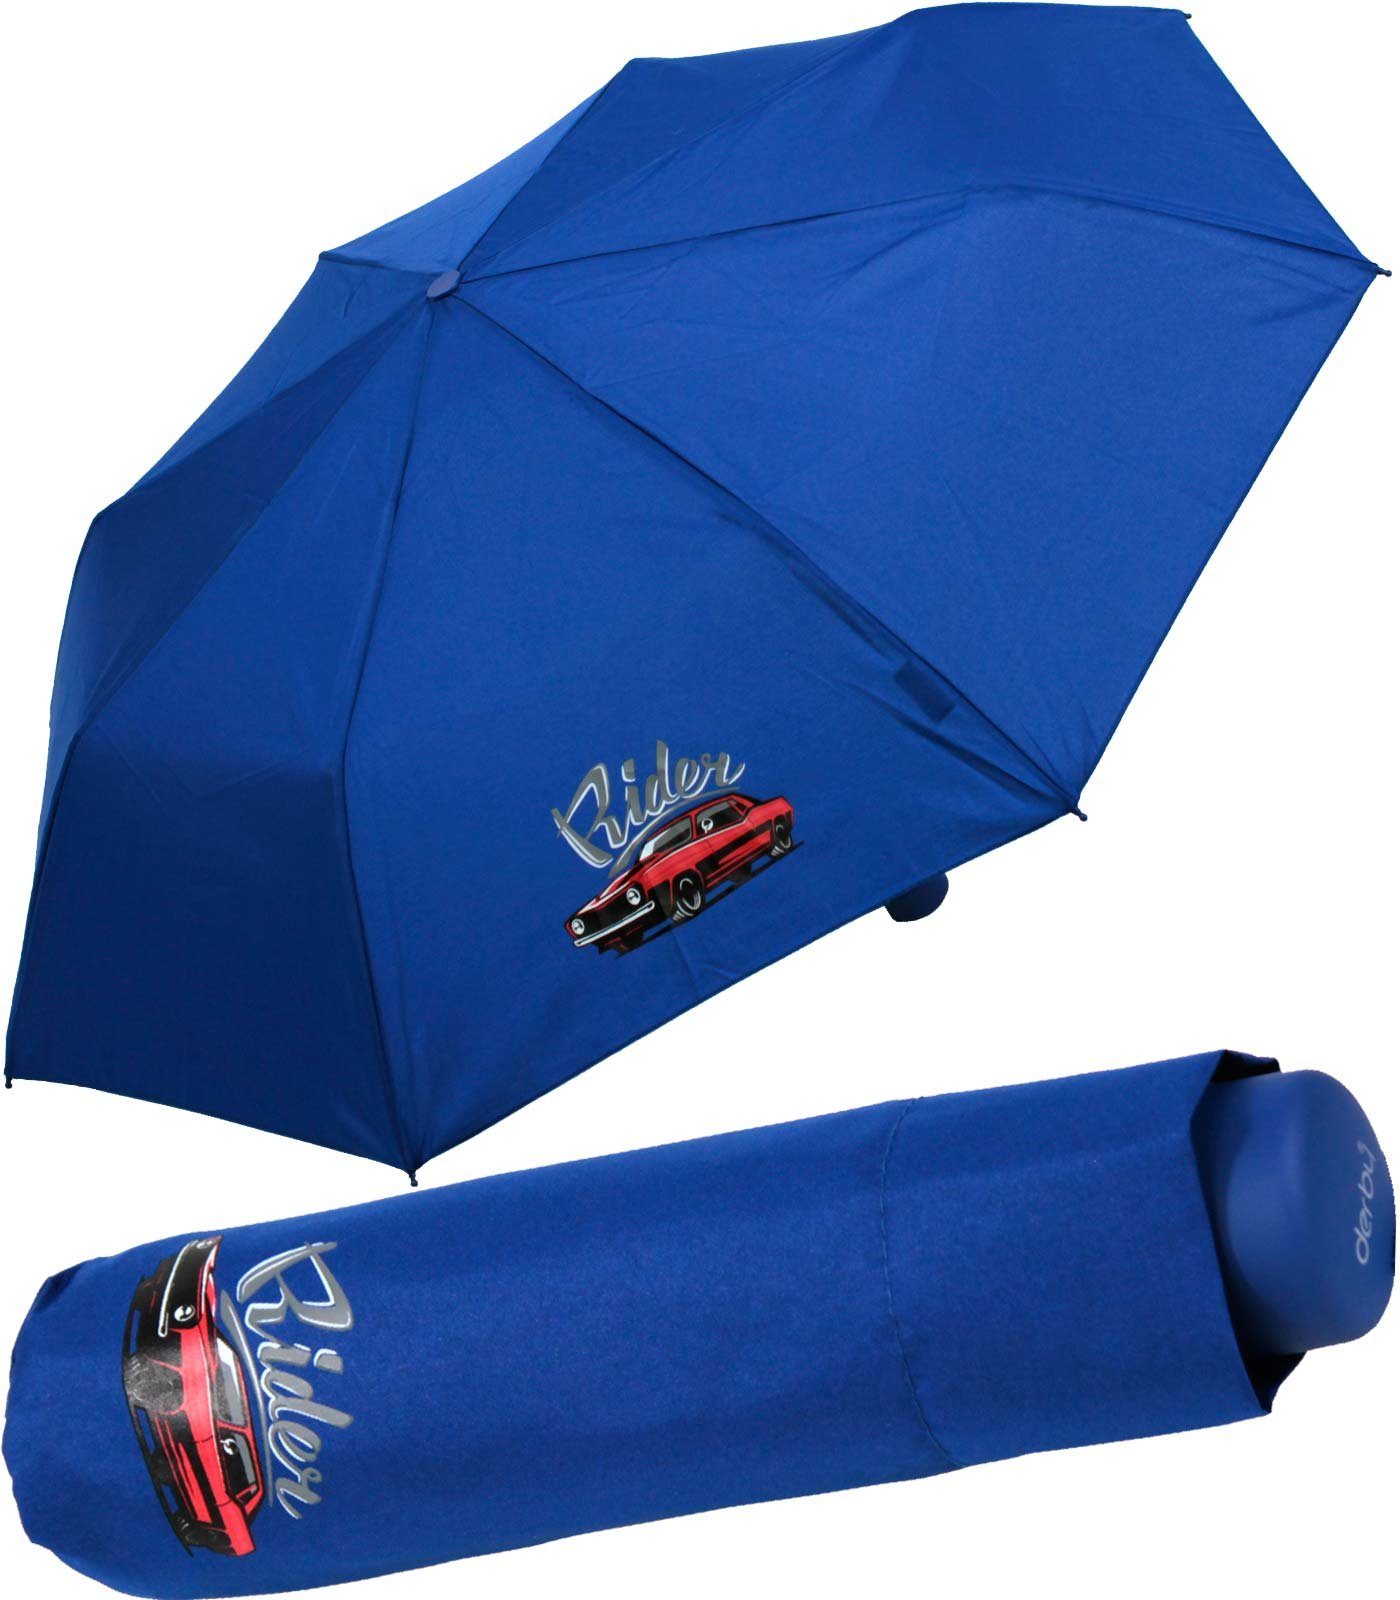 für den leichter Jungen - mit ein Schulweg cars leicht coolen derby Taschenregenschirm Kinderschirm blau, Motiven Mini Schule rider Kids Schirm